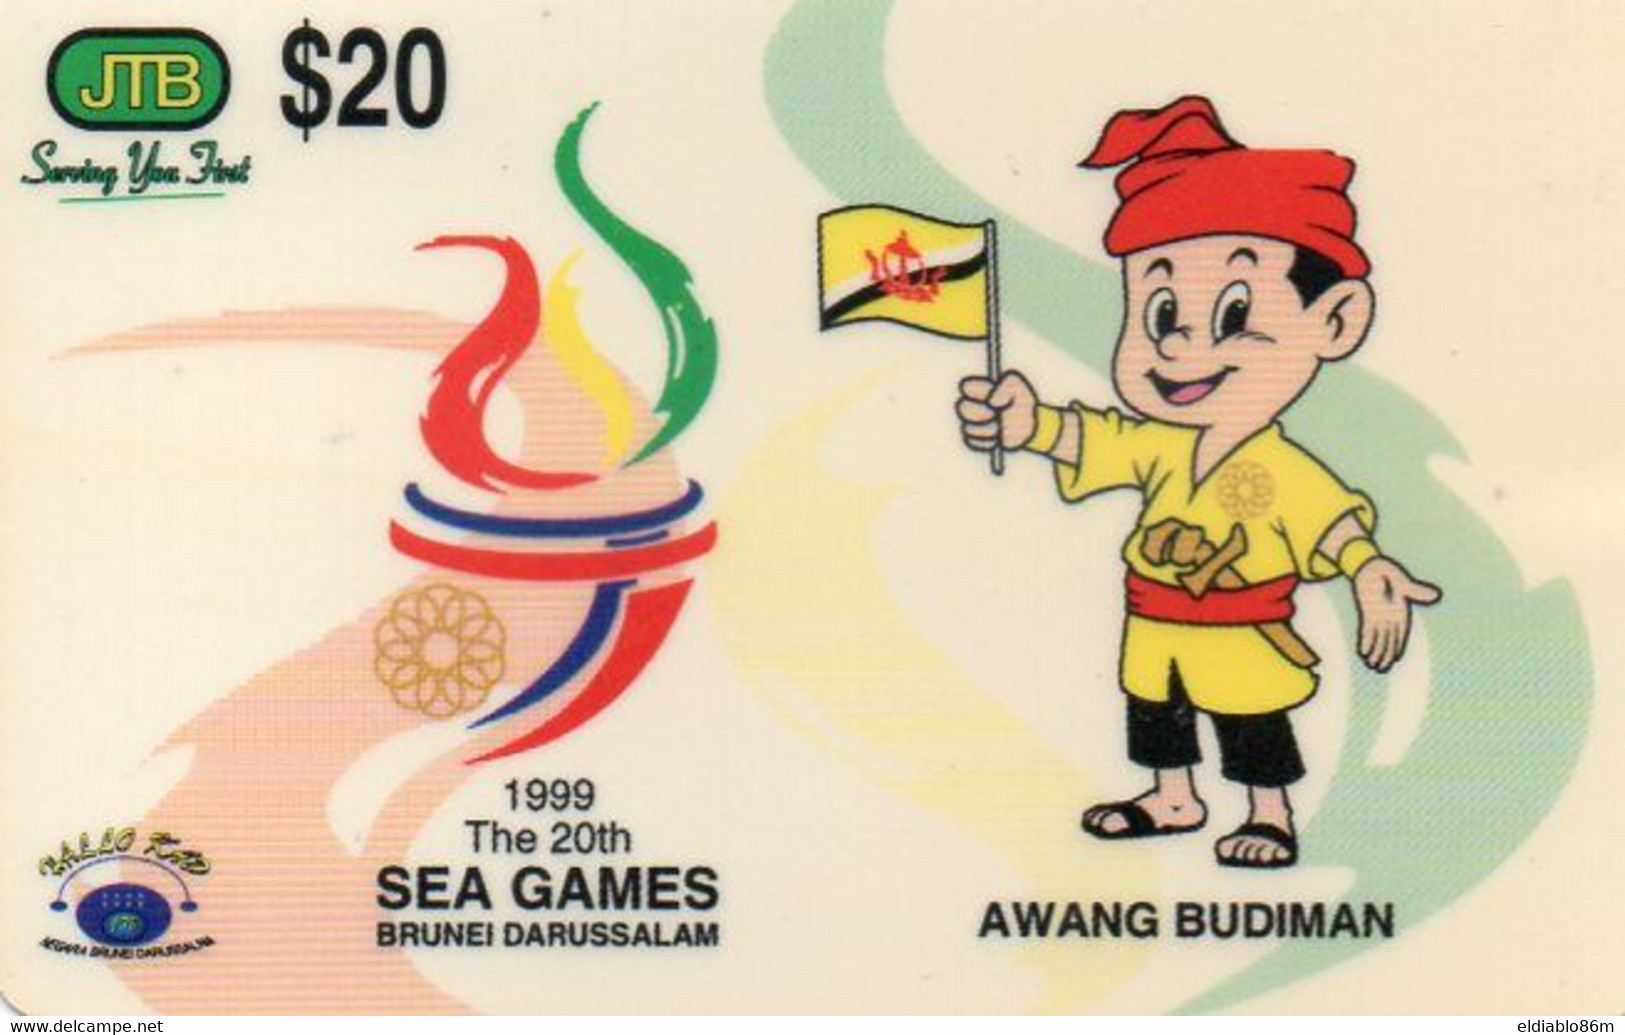 BRUNEI - PREPAID CARD - JTB - SEA GAMES 1999 - Brunei